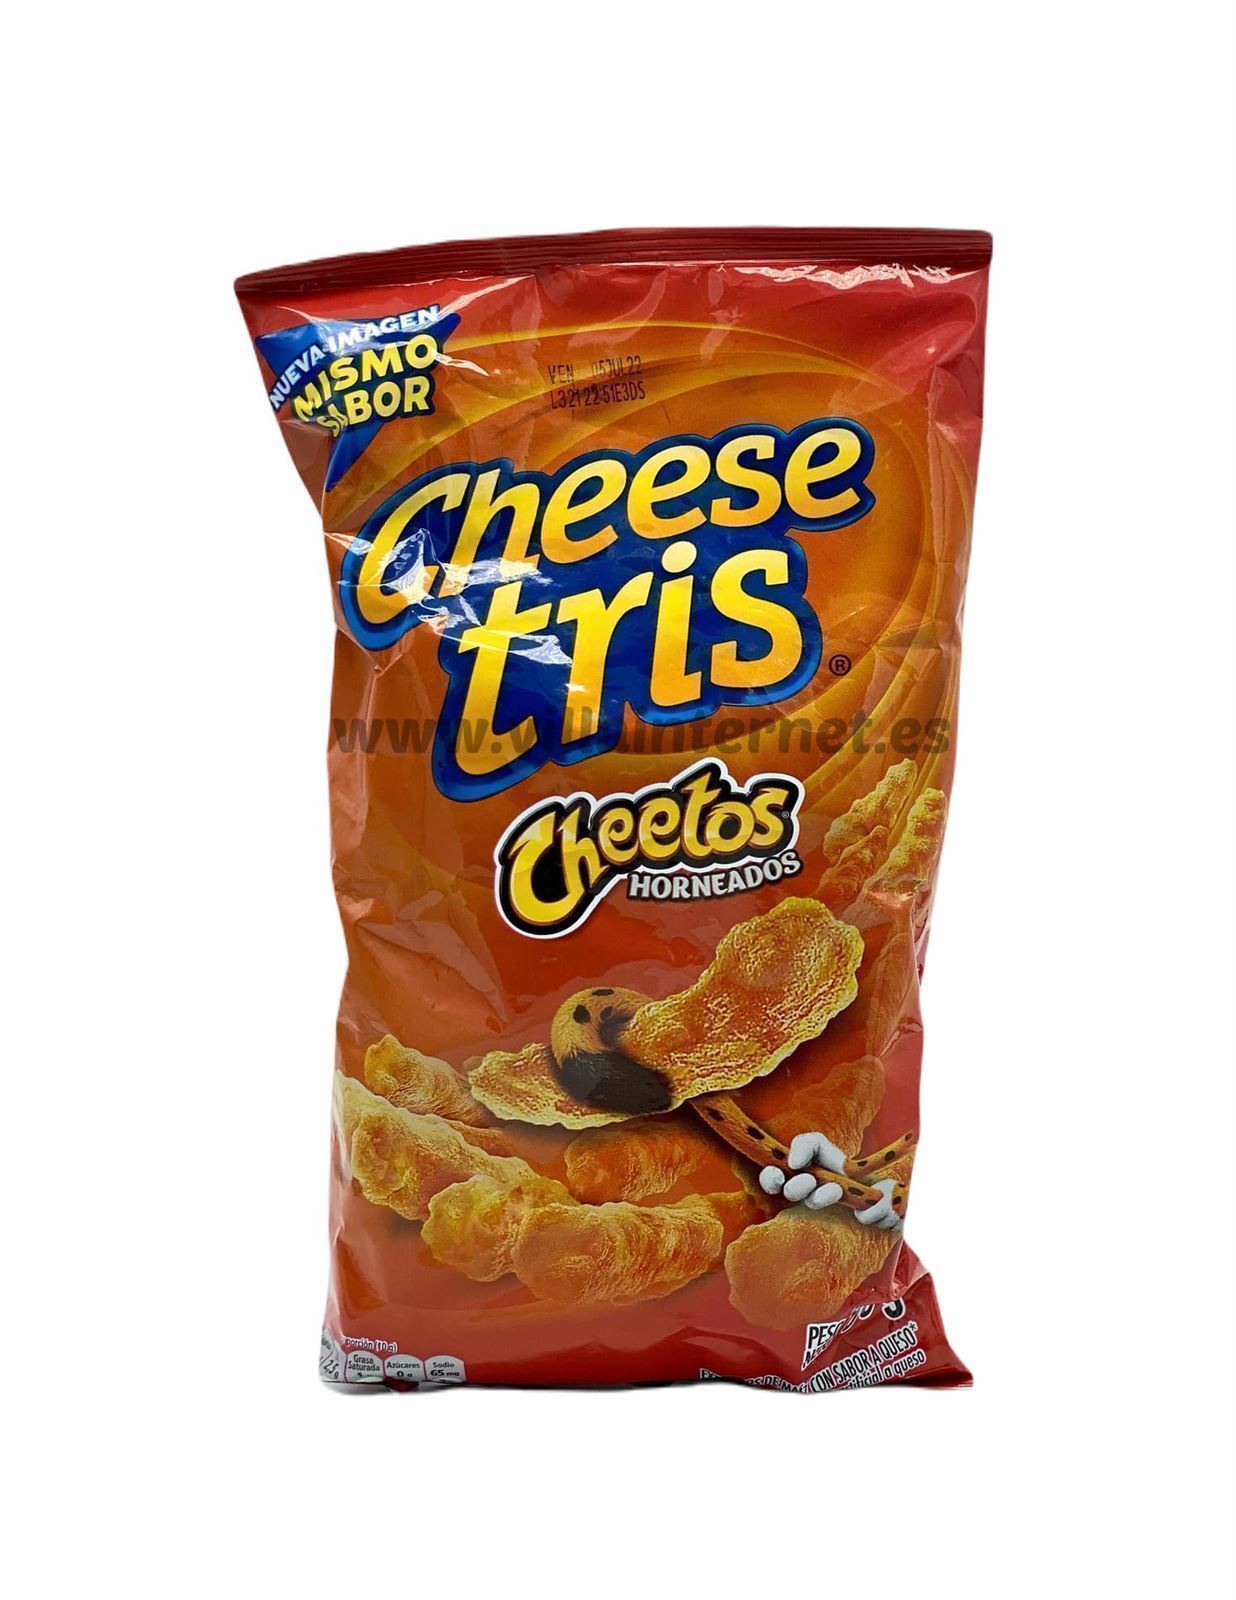 Cheese Tris sabor cheetos horneados 80g - Imagen 1